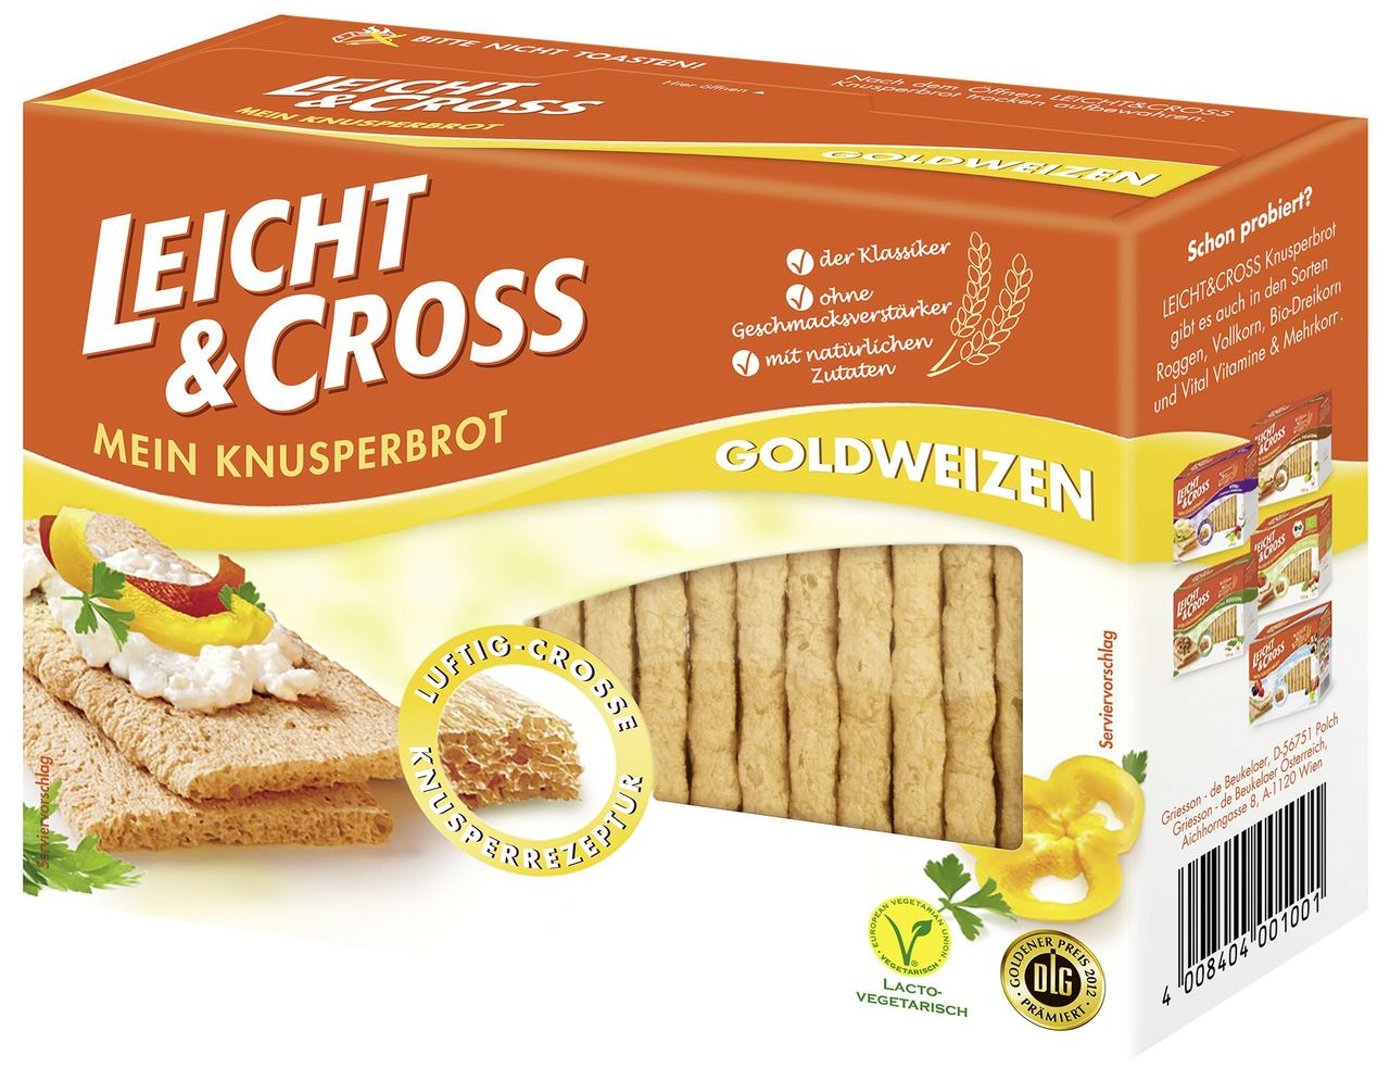 Leicht & Cross - Knusperbrot Weizen 8 x 125 g Schachteln